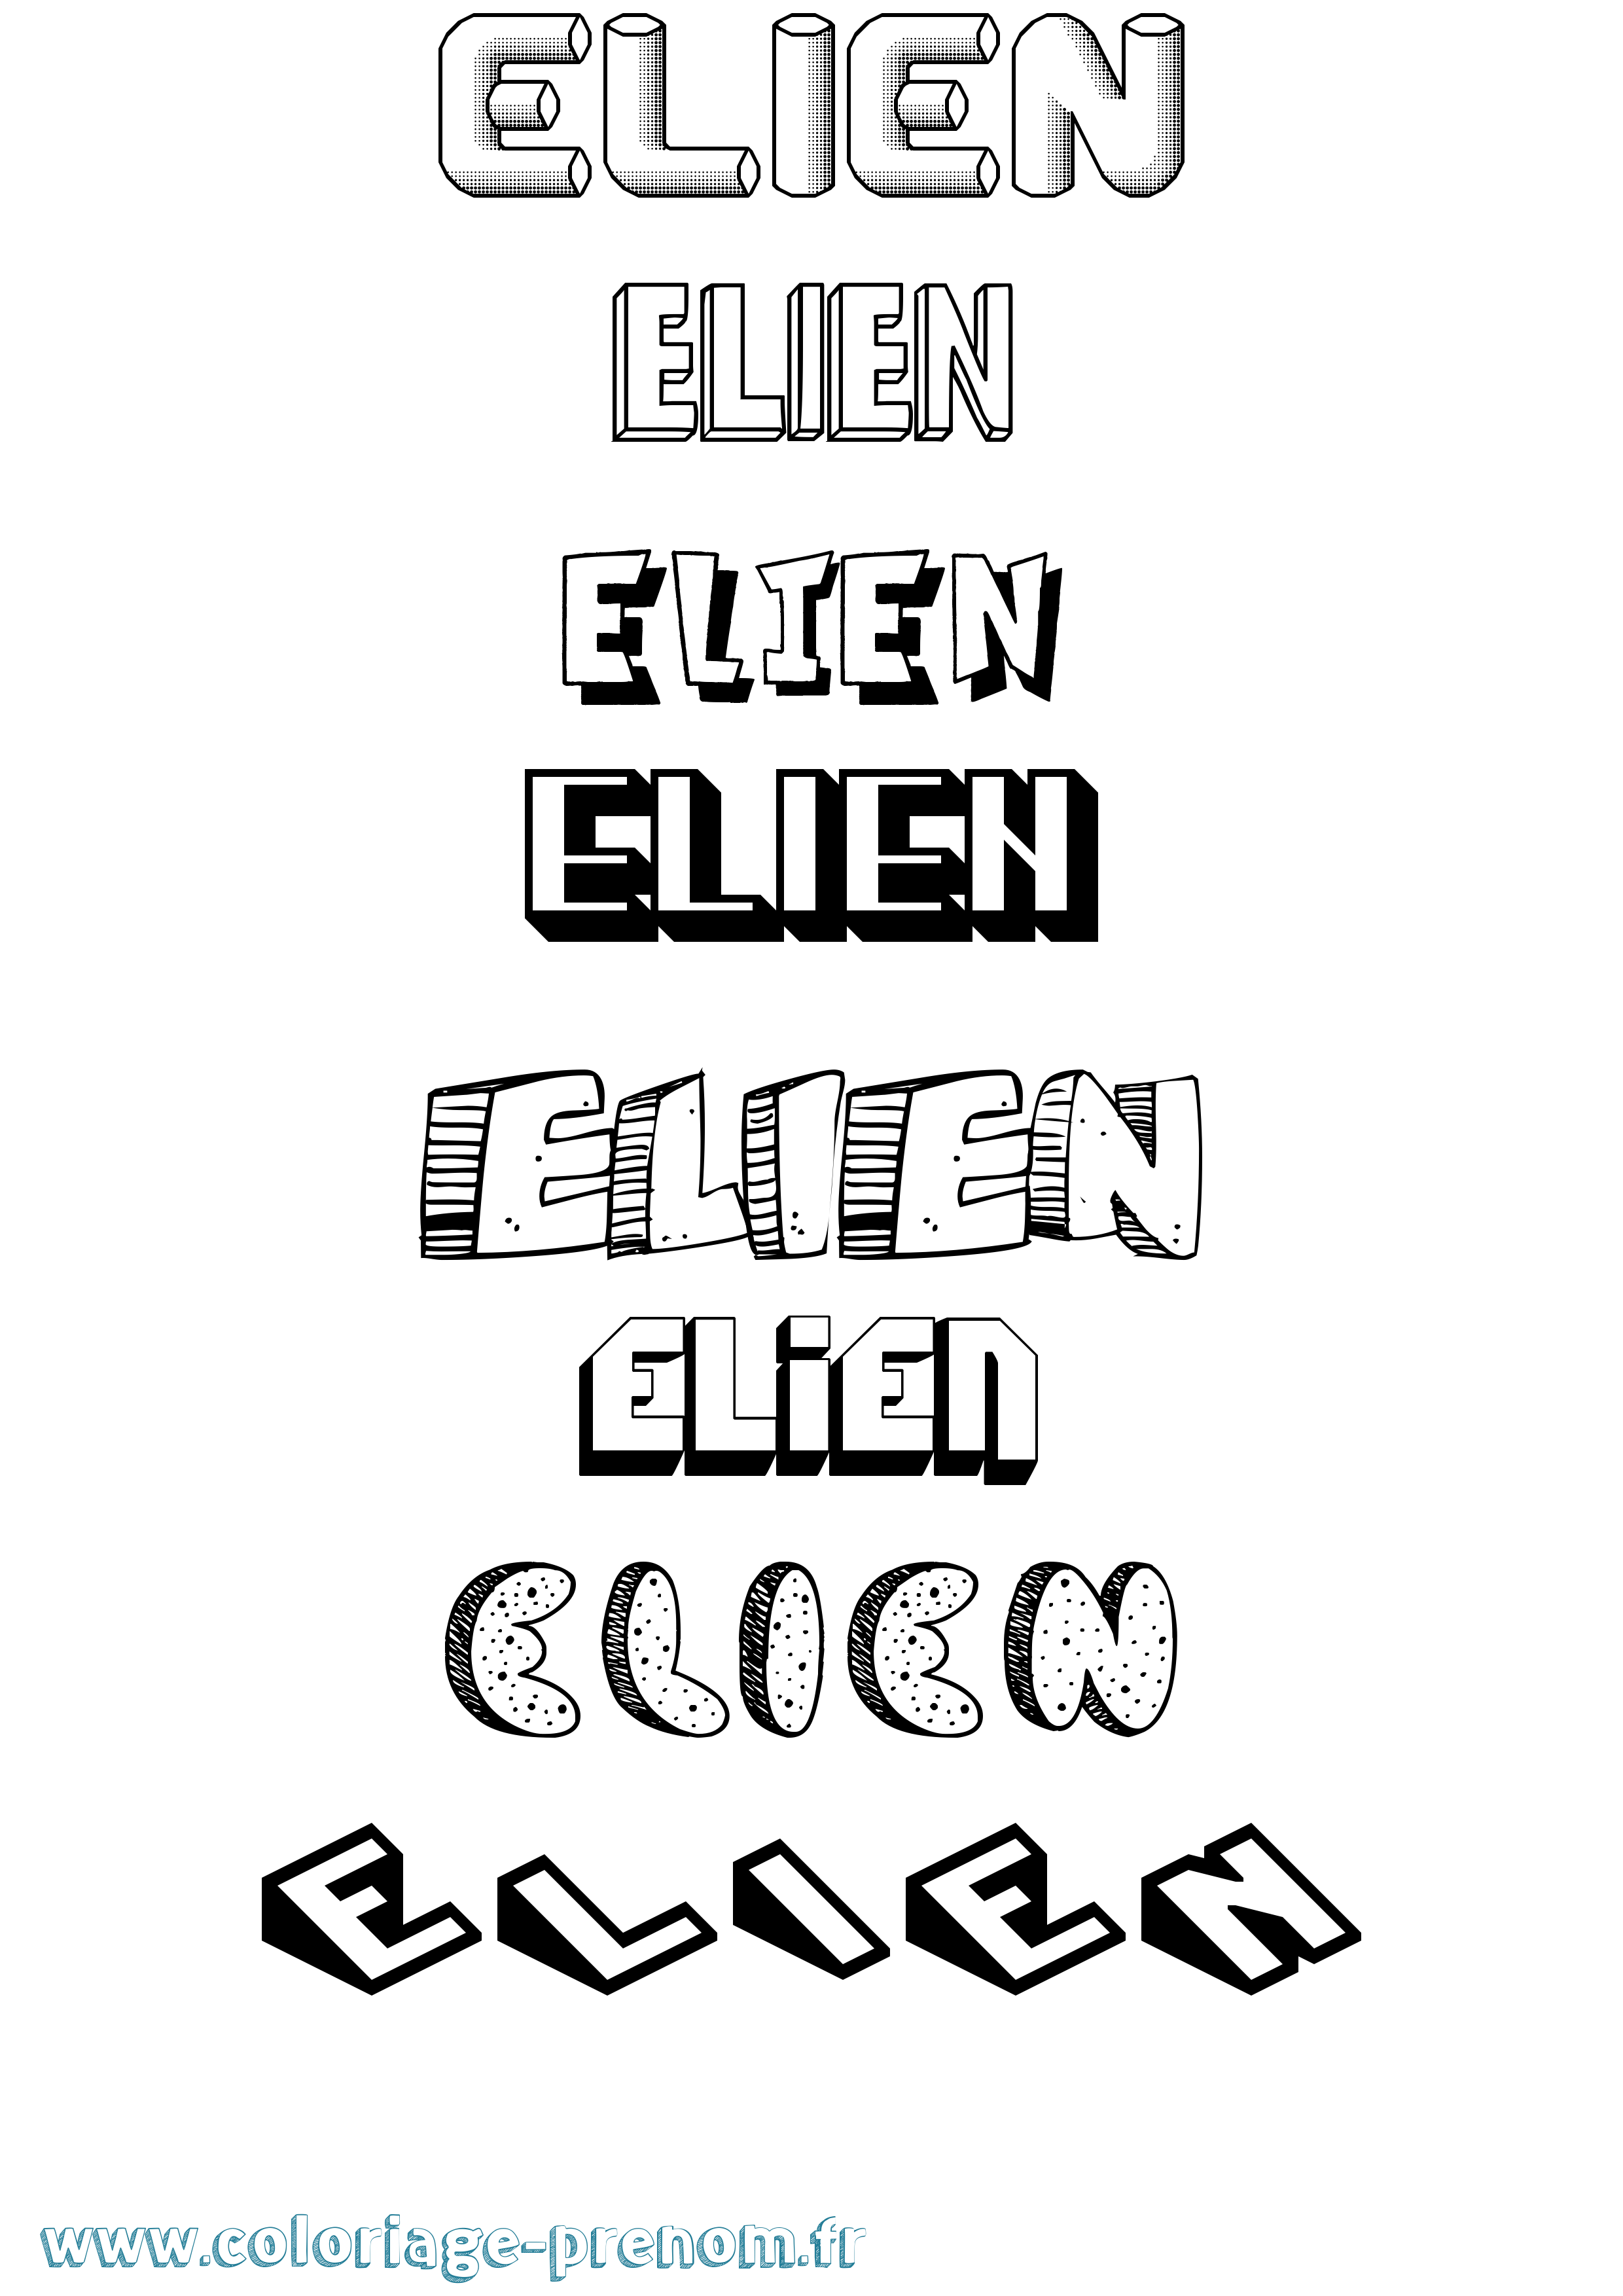 Coloriage prénom Elien Effet 3D